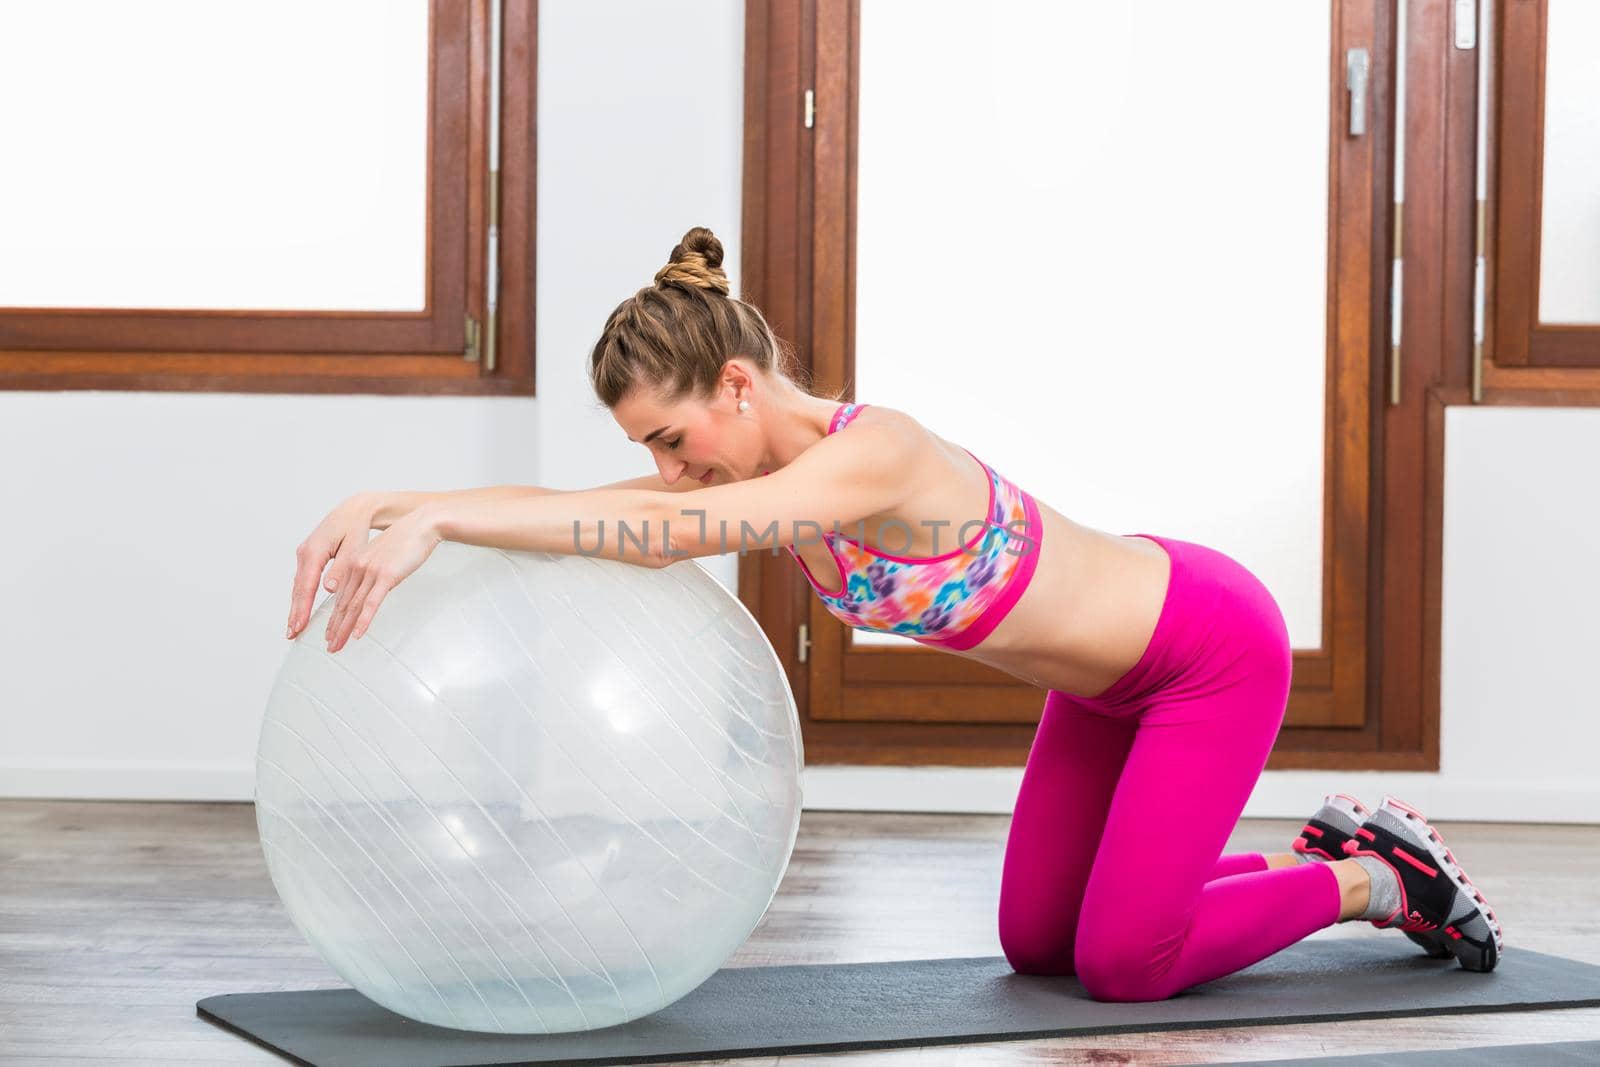 Woman doing exercise on pilates ball by Kzenon